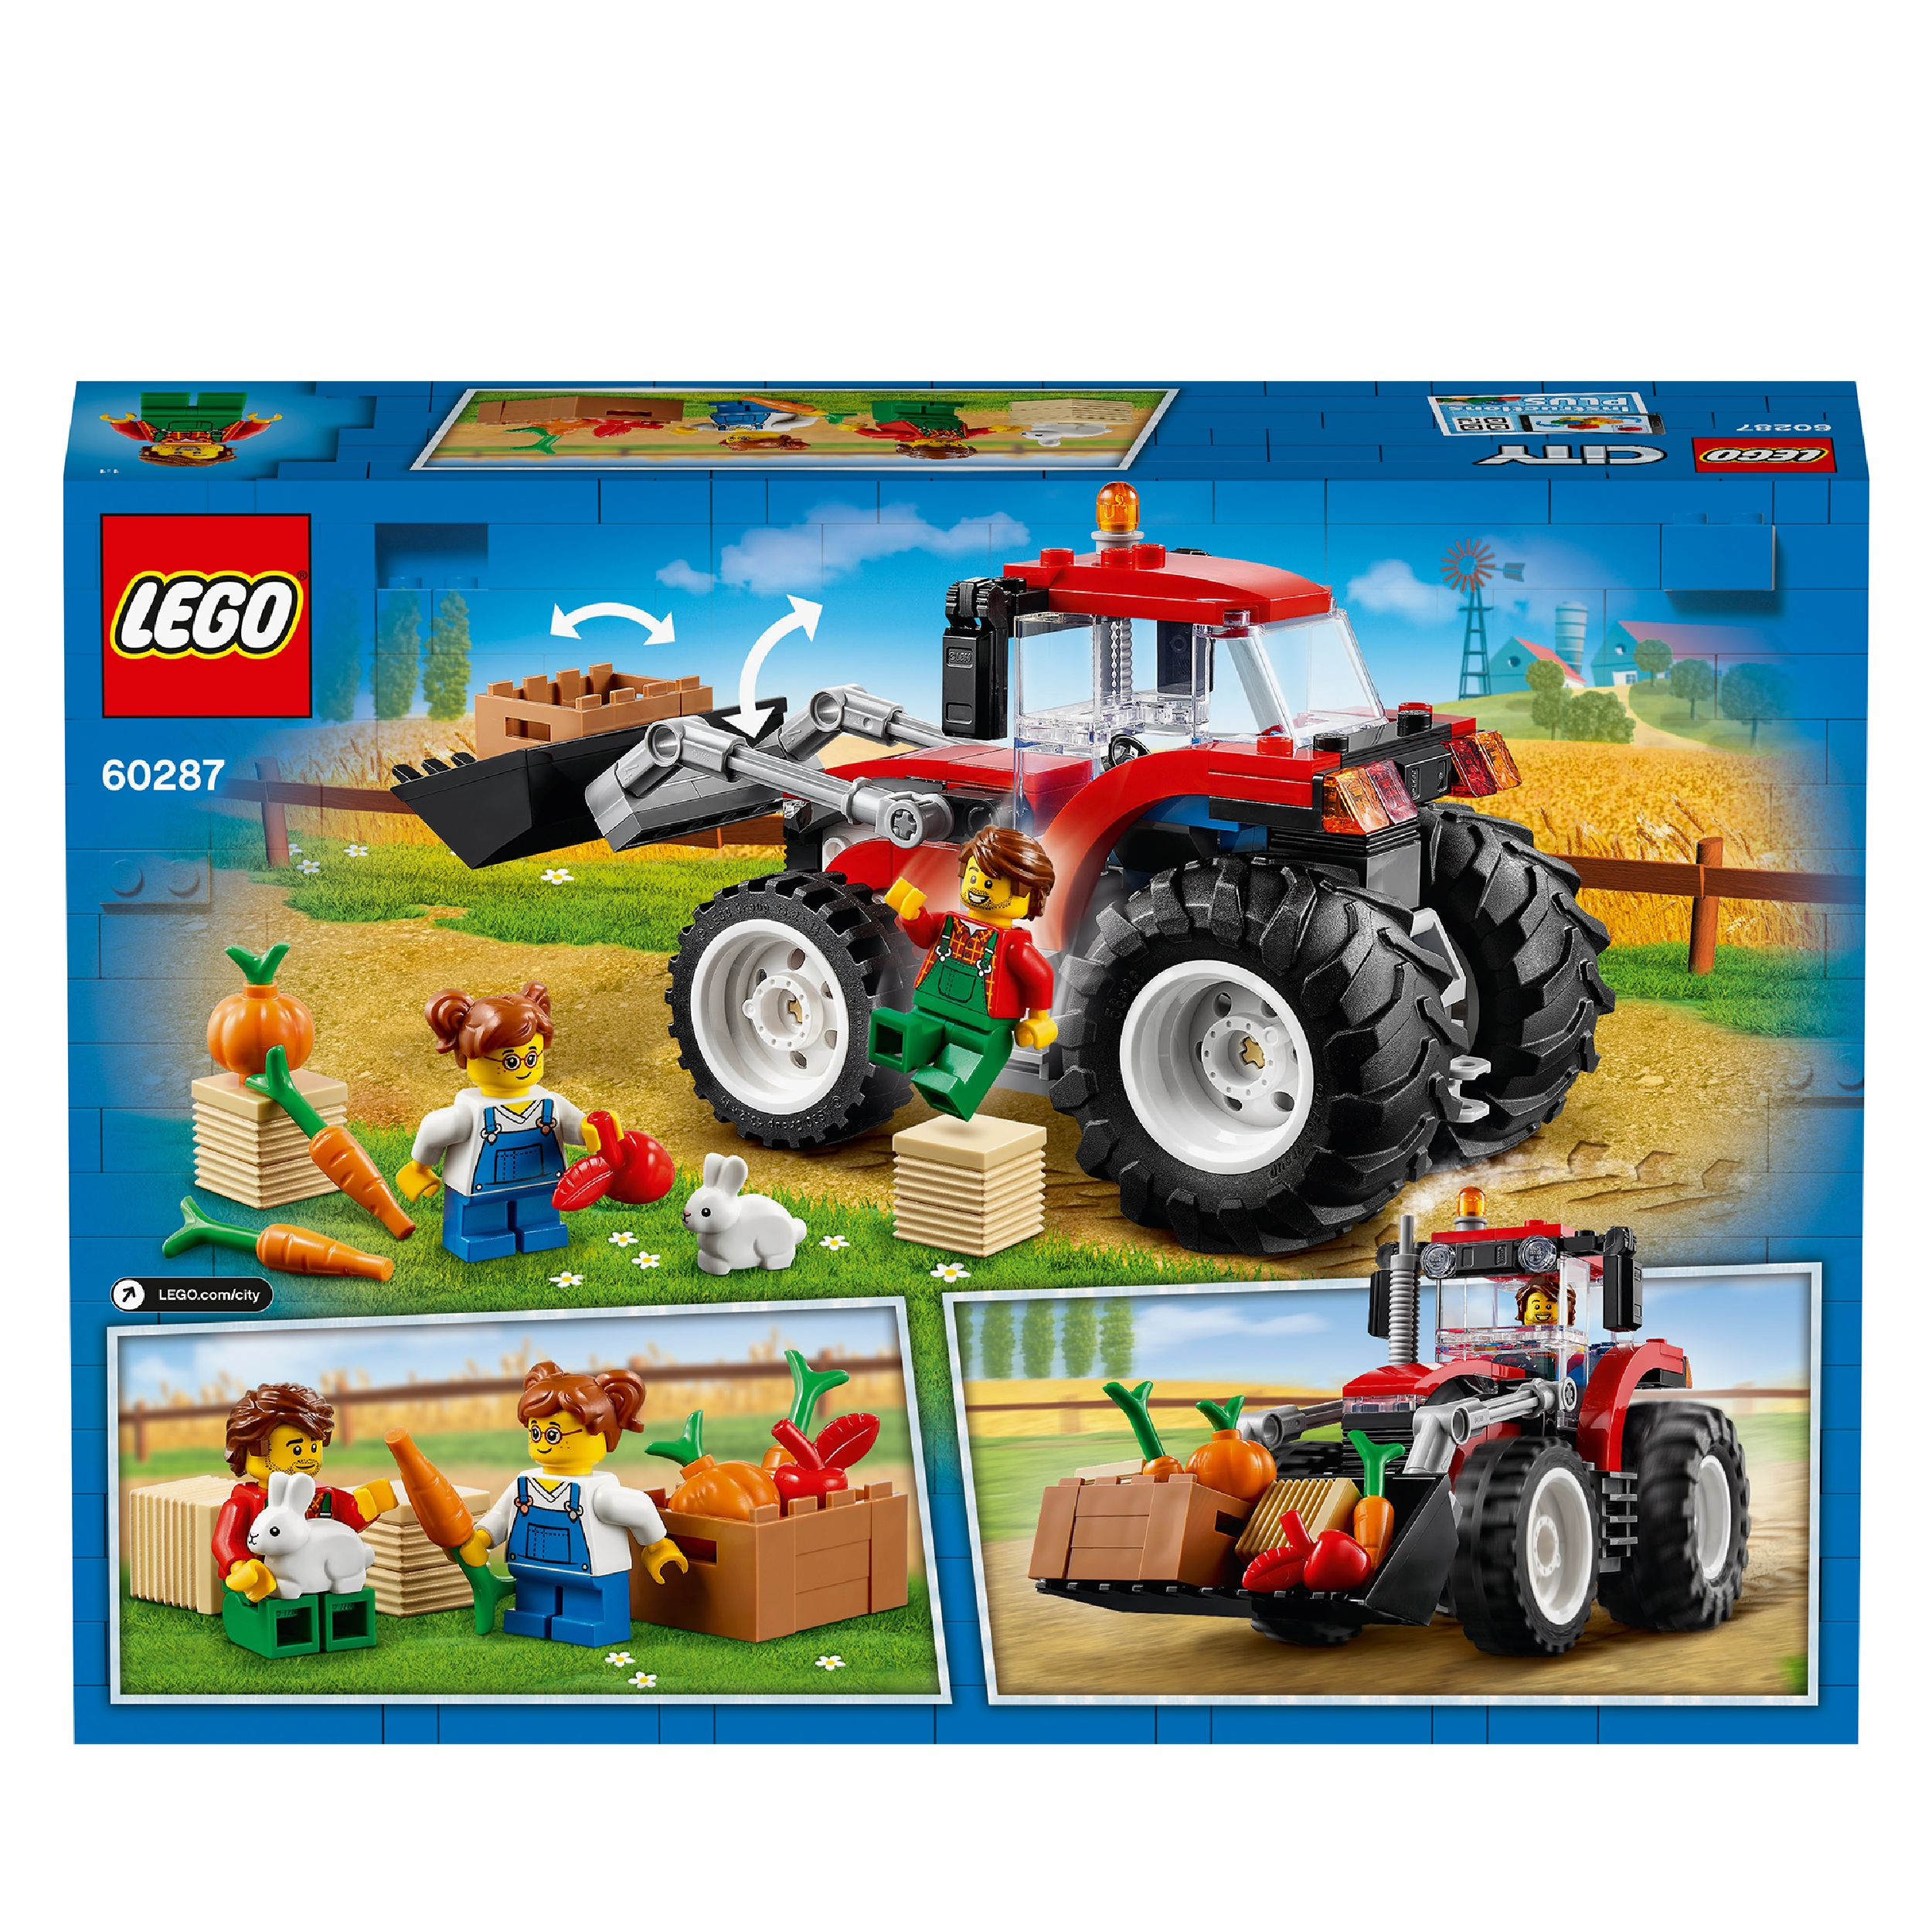 Traktor LEGO City 60287 Bausatz, Mehrfarbig